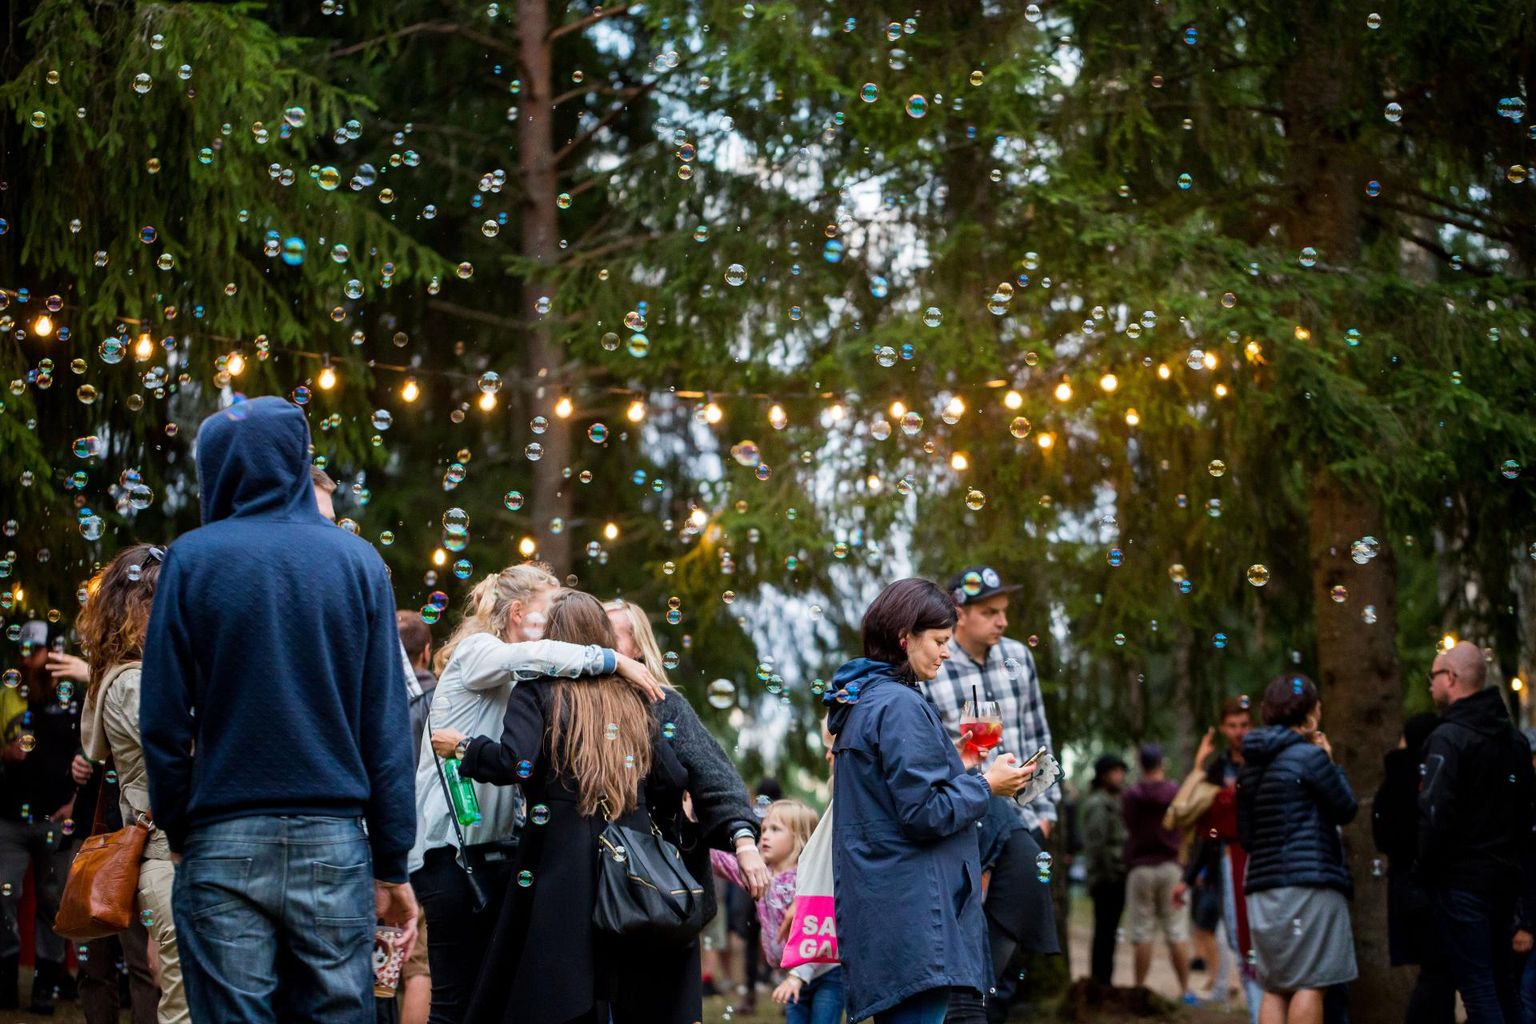 Intsikurmu festival toob Põlva-maile rohkesti muusikasõpru.
Eero Vabamägi / Postimees